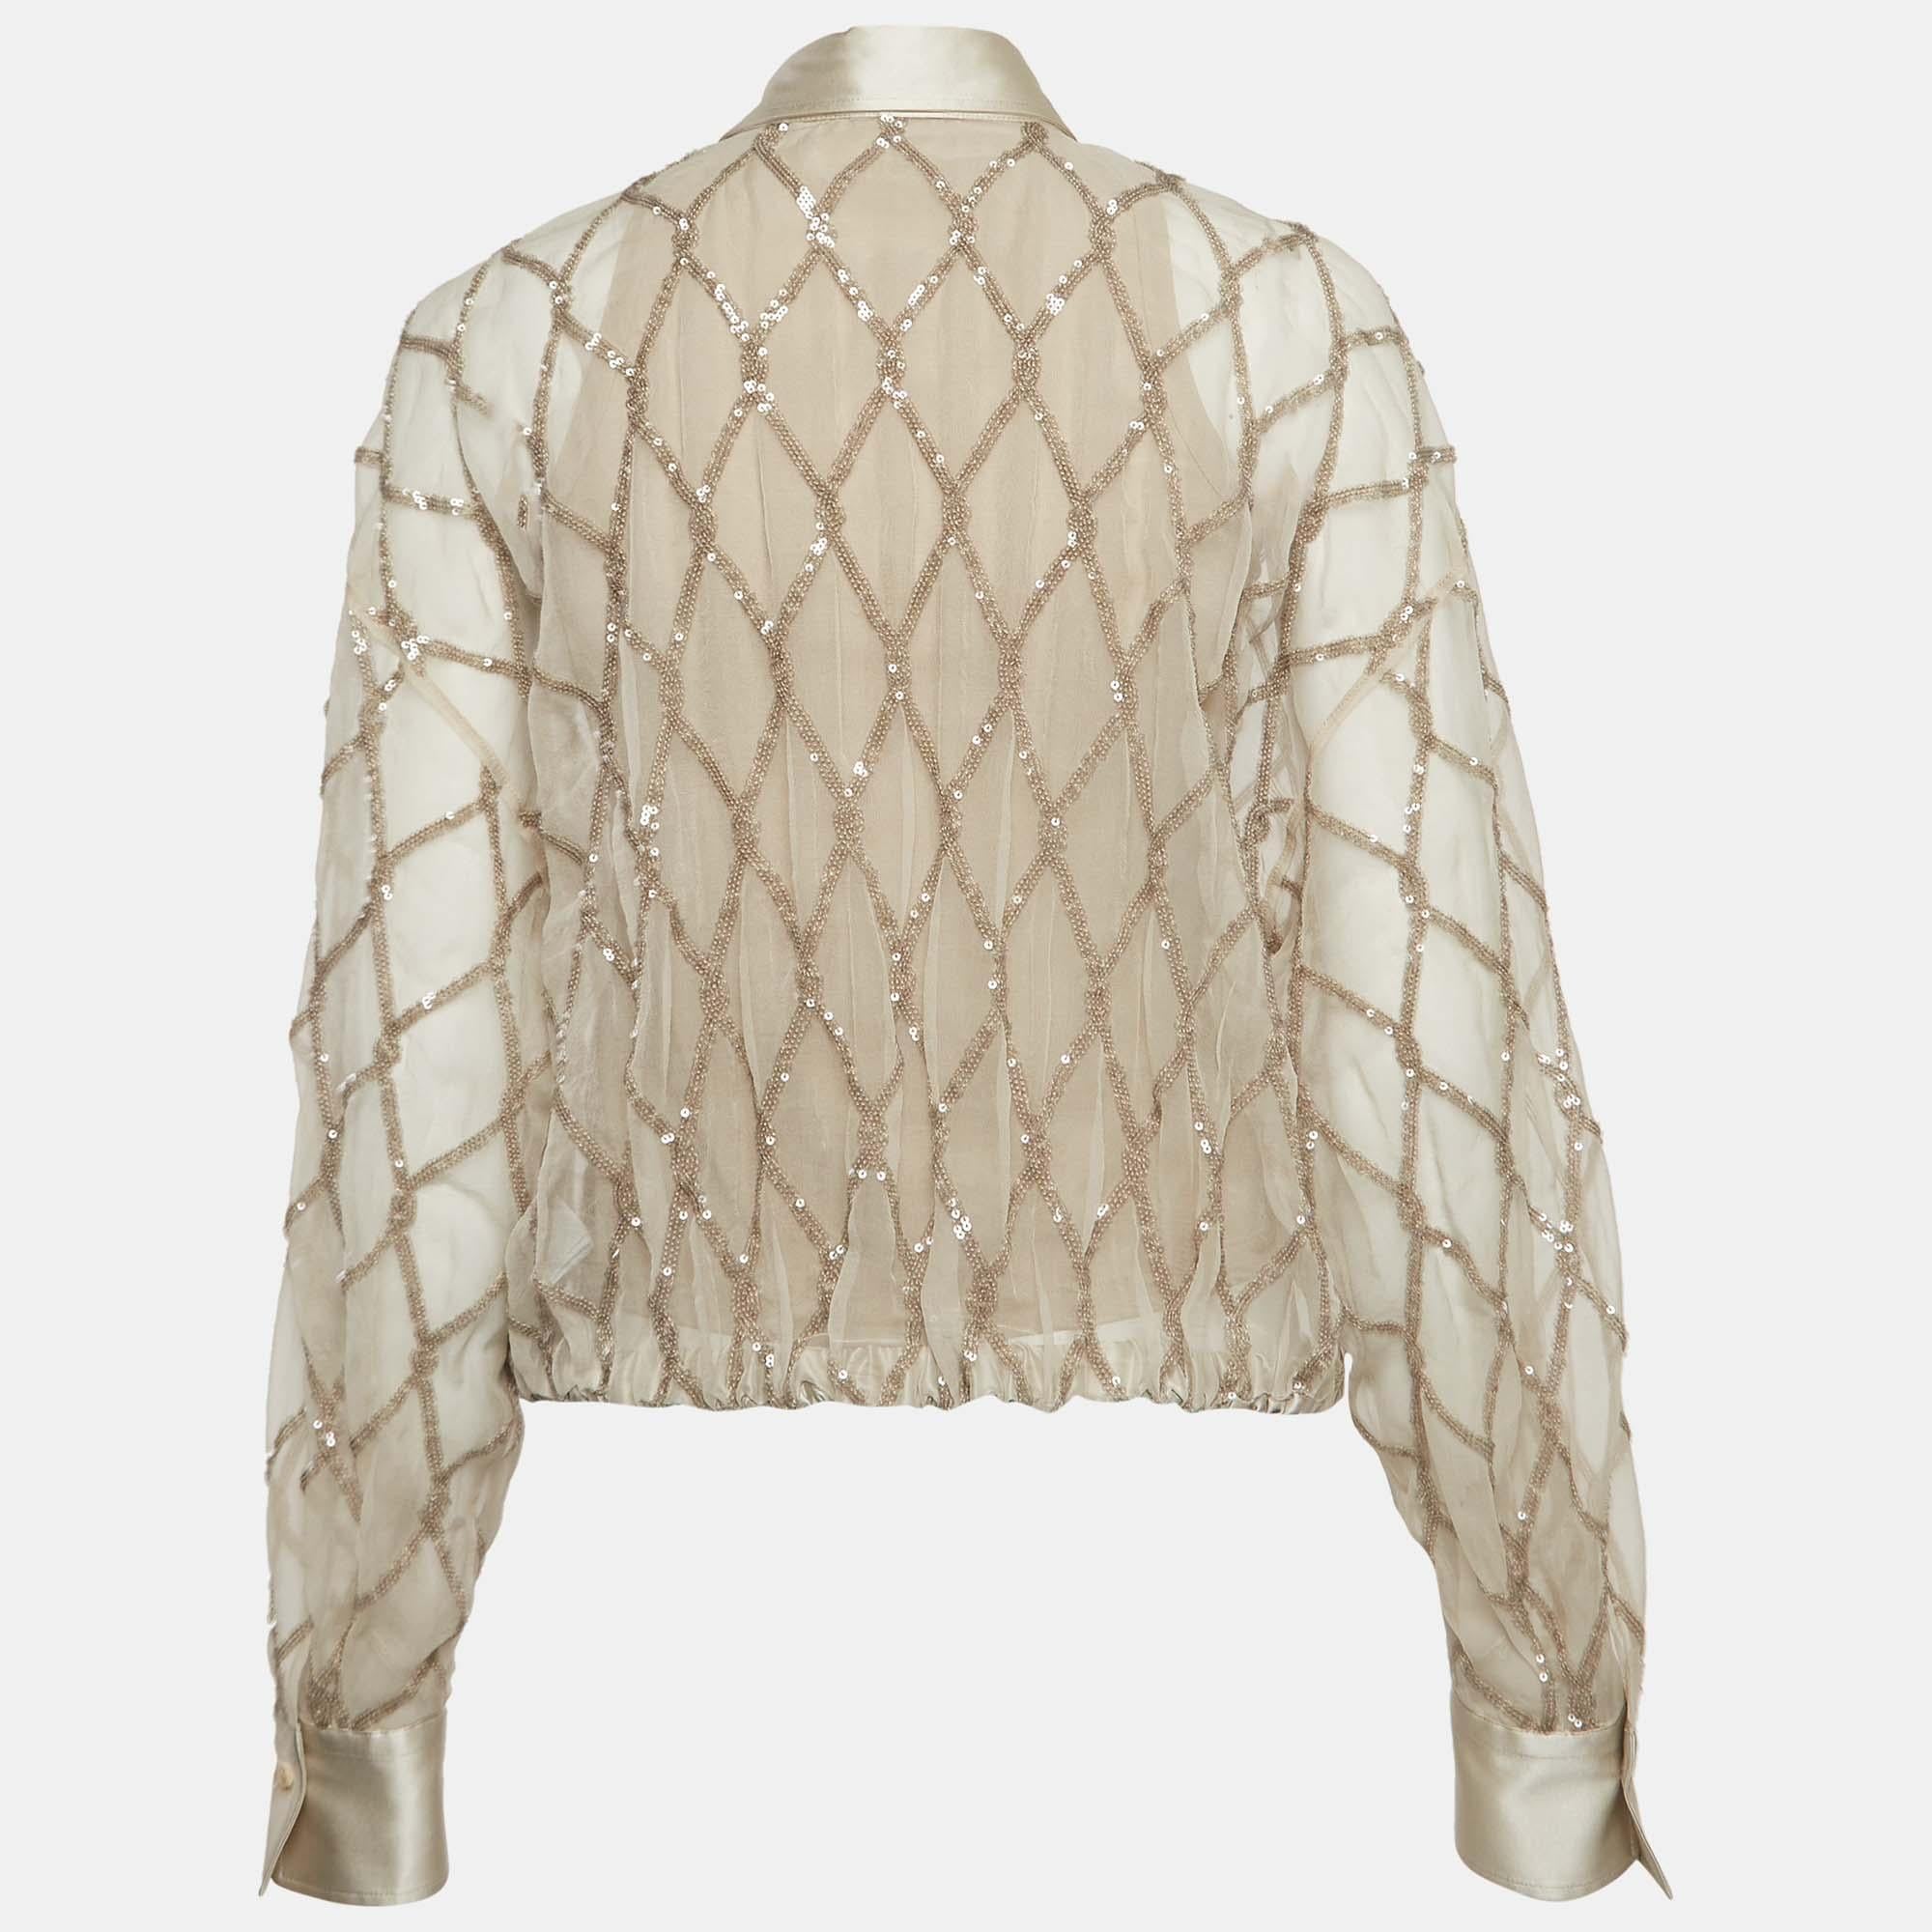 Que vous souhaitiez faire des sorties décontractées avec des amis ou simplement vous prélasser, cette chemise Brunello Cucinelli est une pièce polyvalente et peut être stylisée de nombreuses façons. Elle est réalisée en soie et rehaussée de